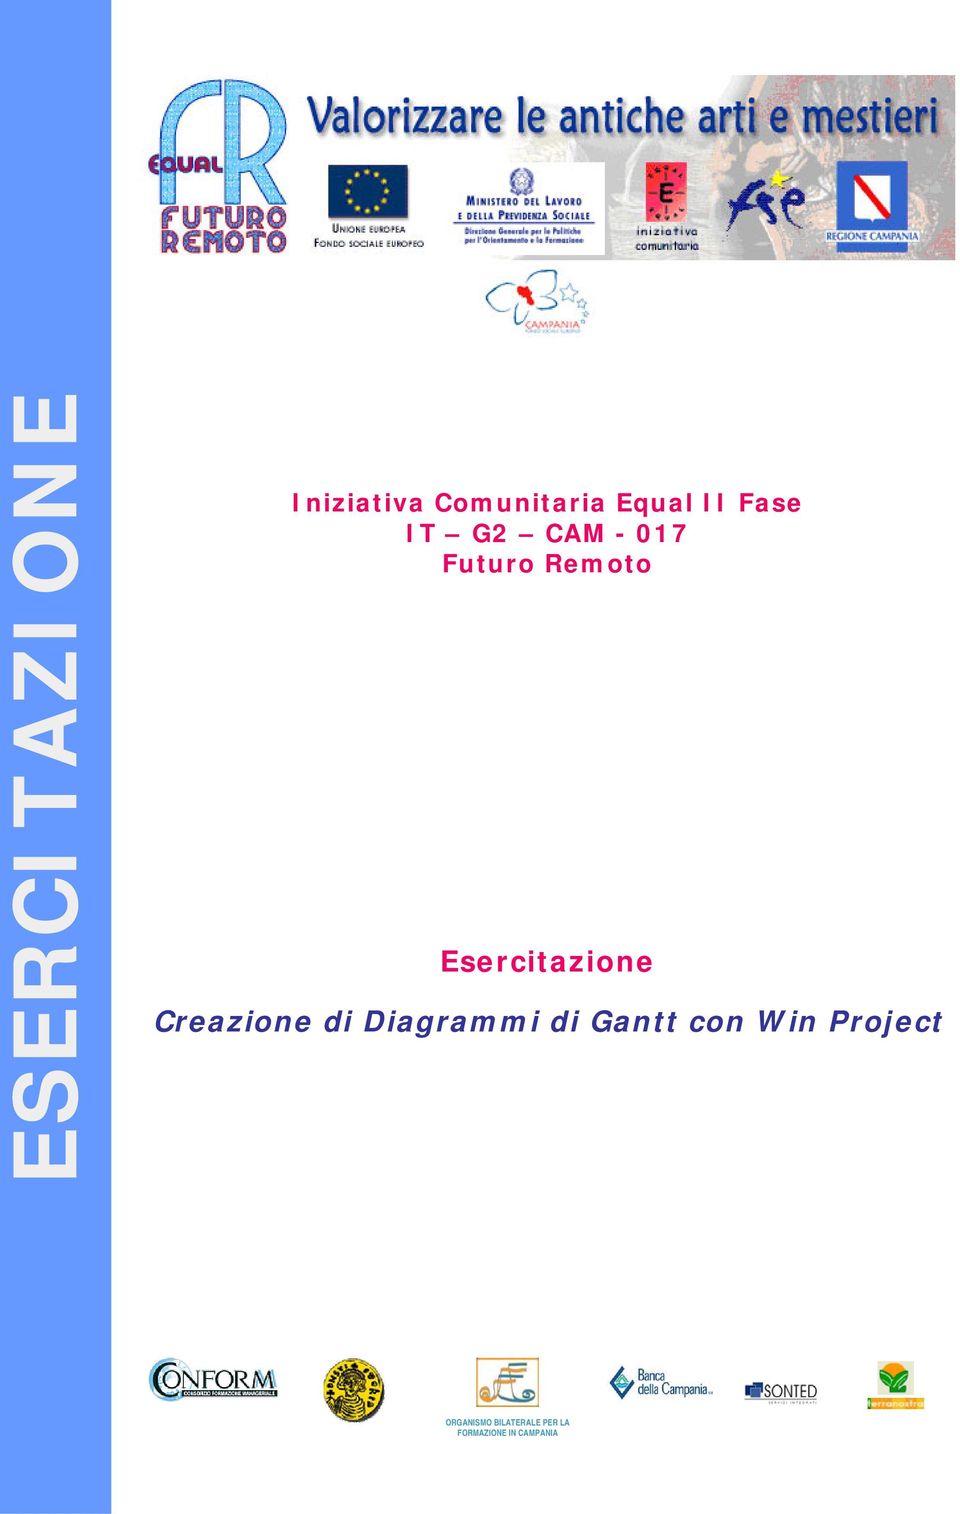 Creazione di Diagrammi di Gantt con Win Project